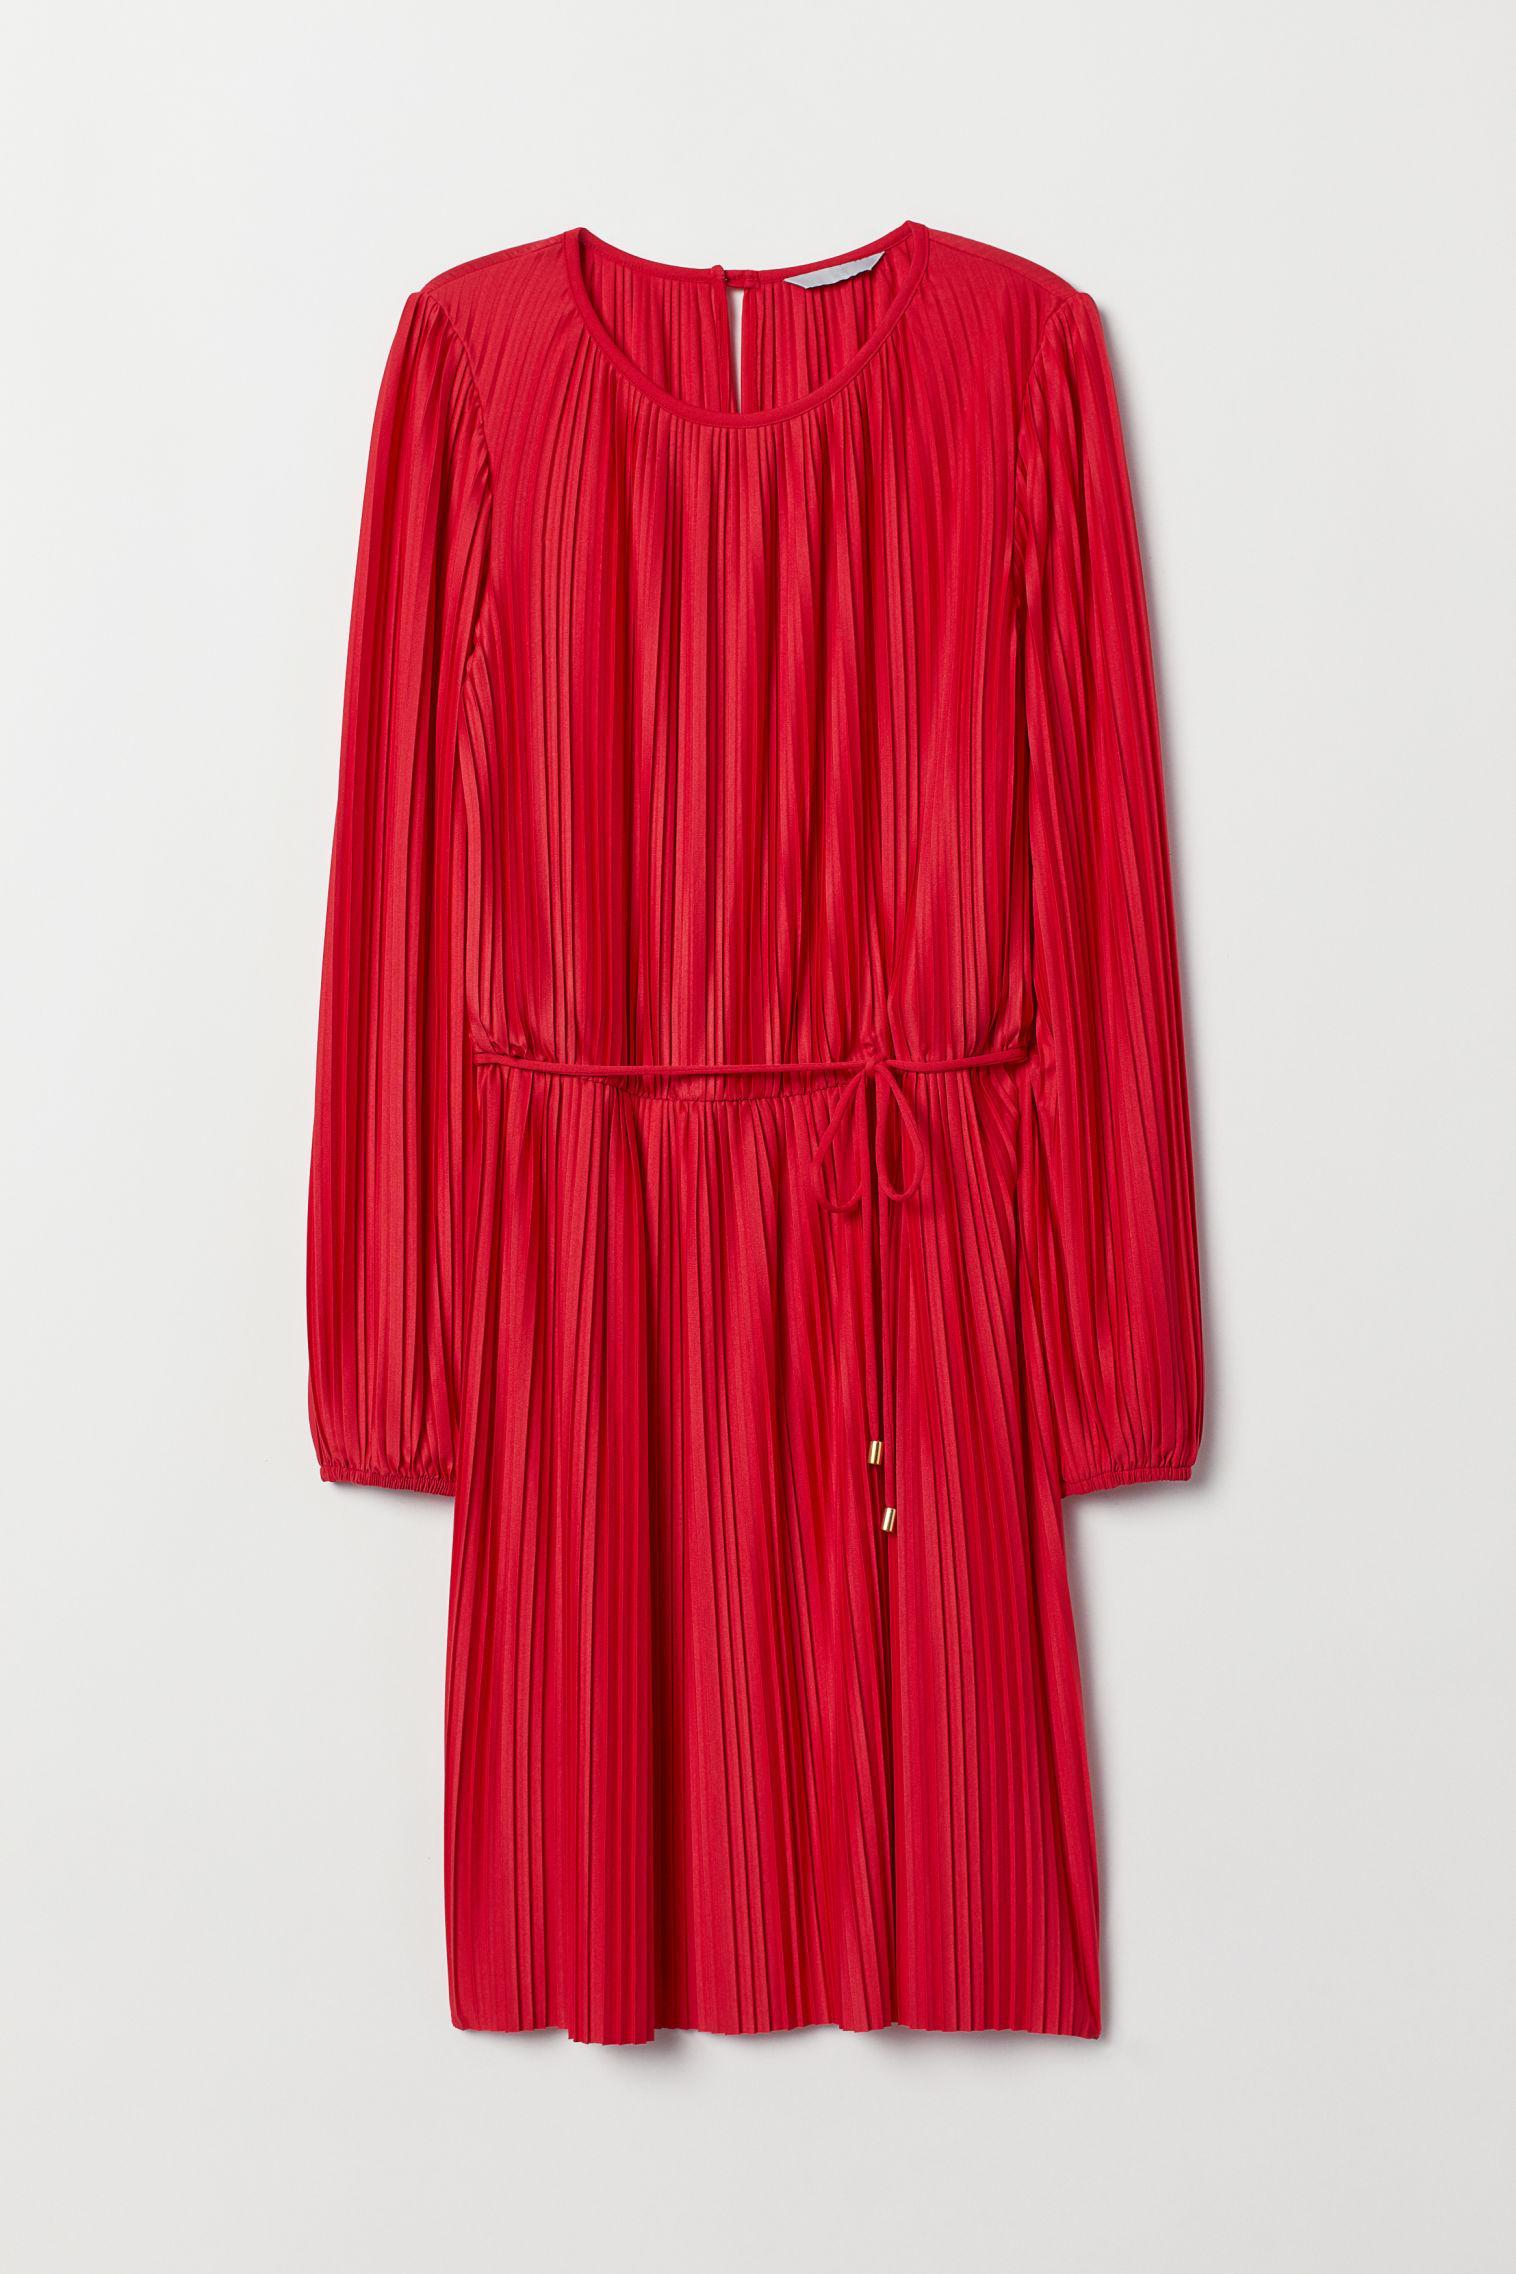 Отзыв на Плиссированный топ Платье из Интернет-Магазина H&M